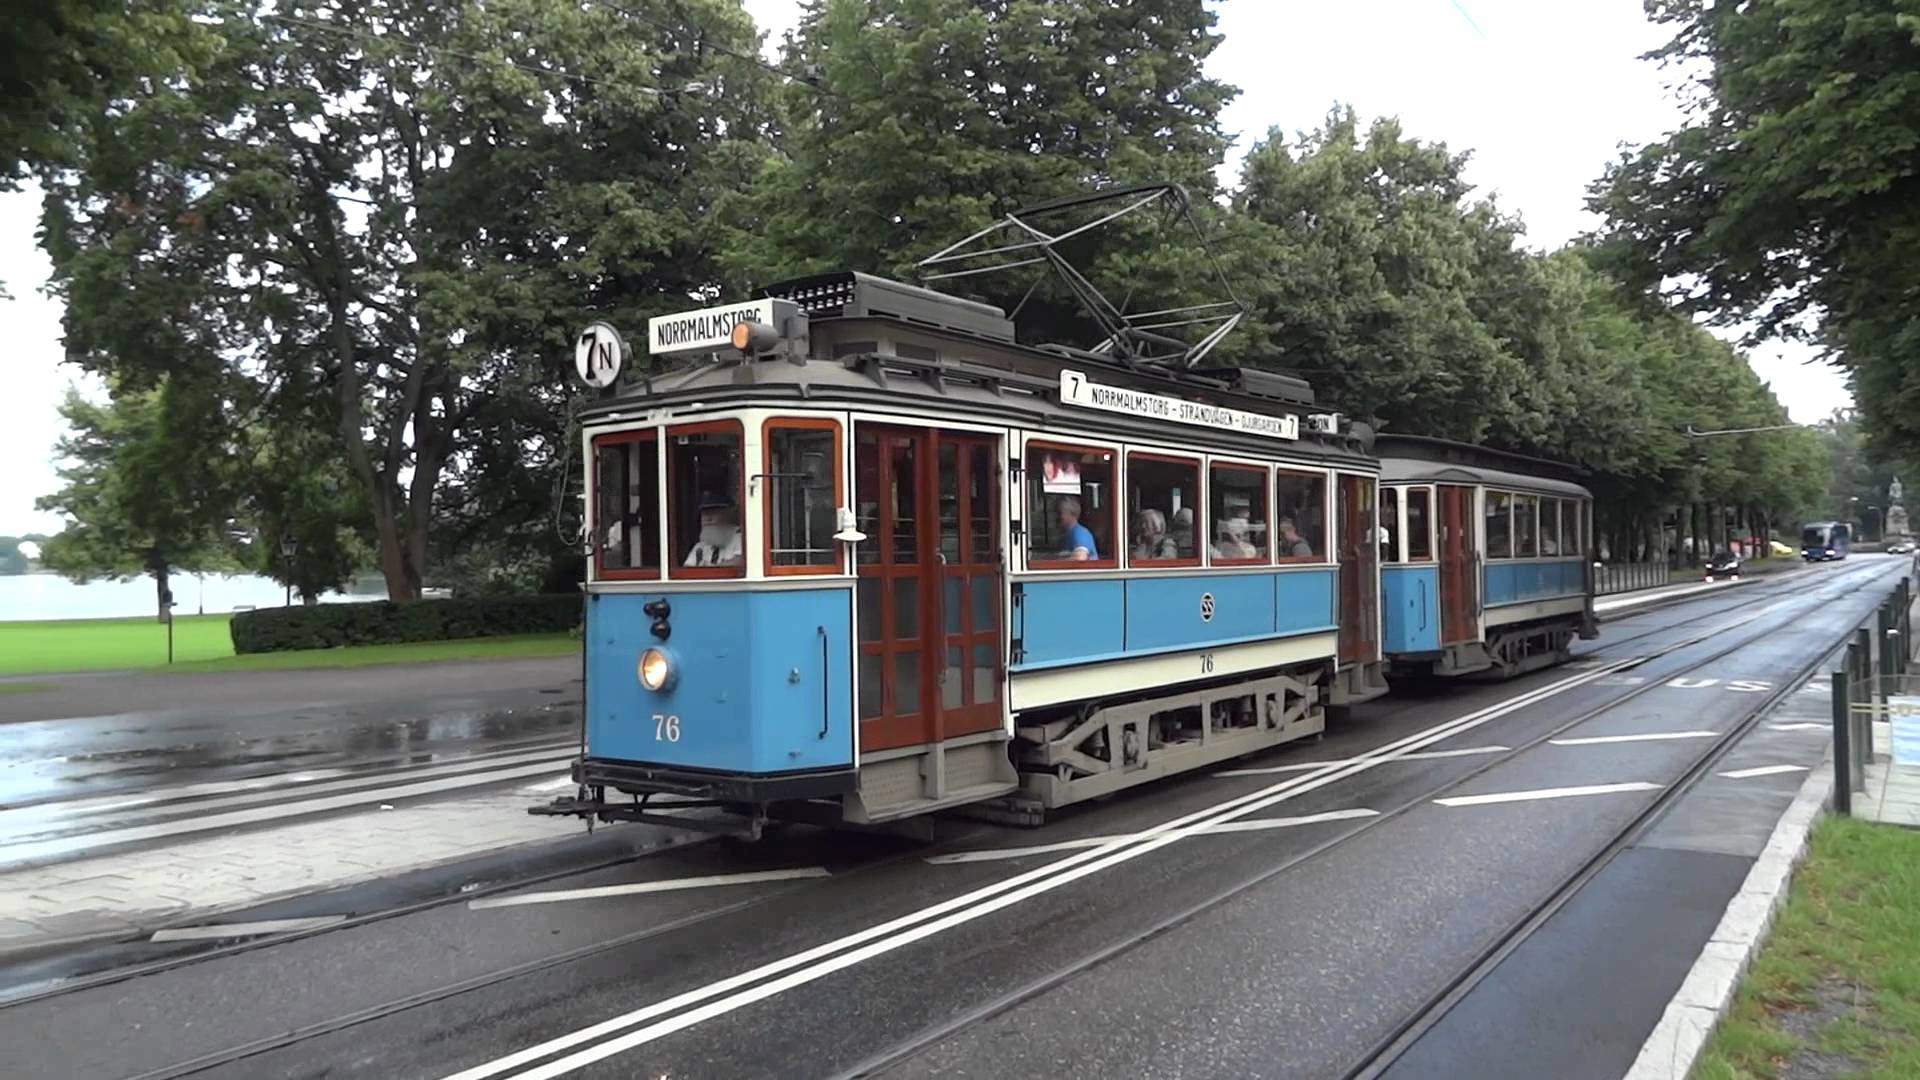 Djurgårdslinjen - old trams in Stockholm - YouTube